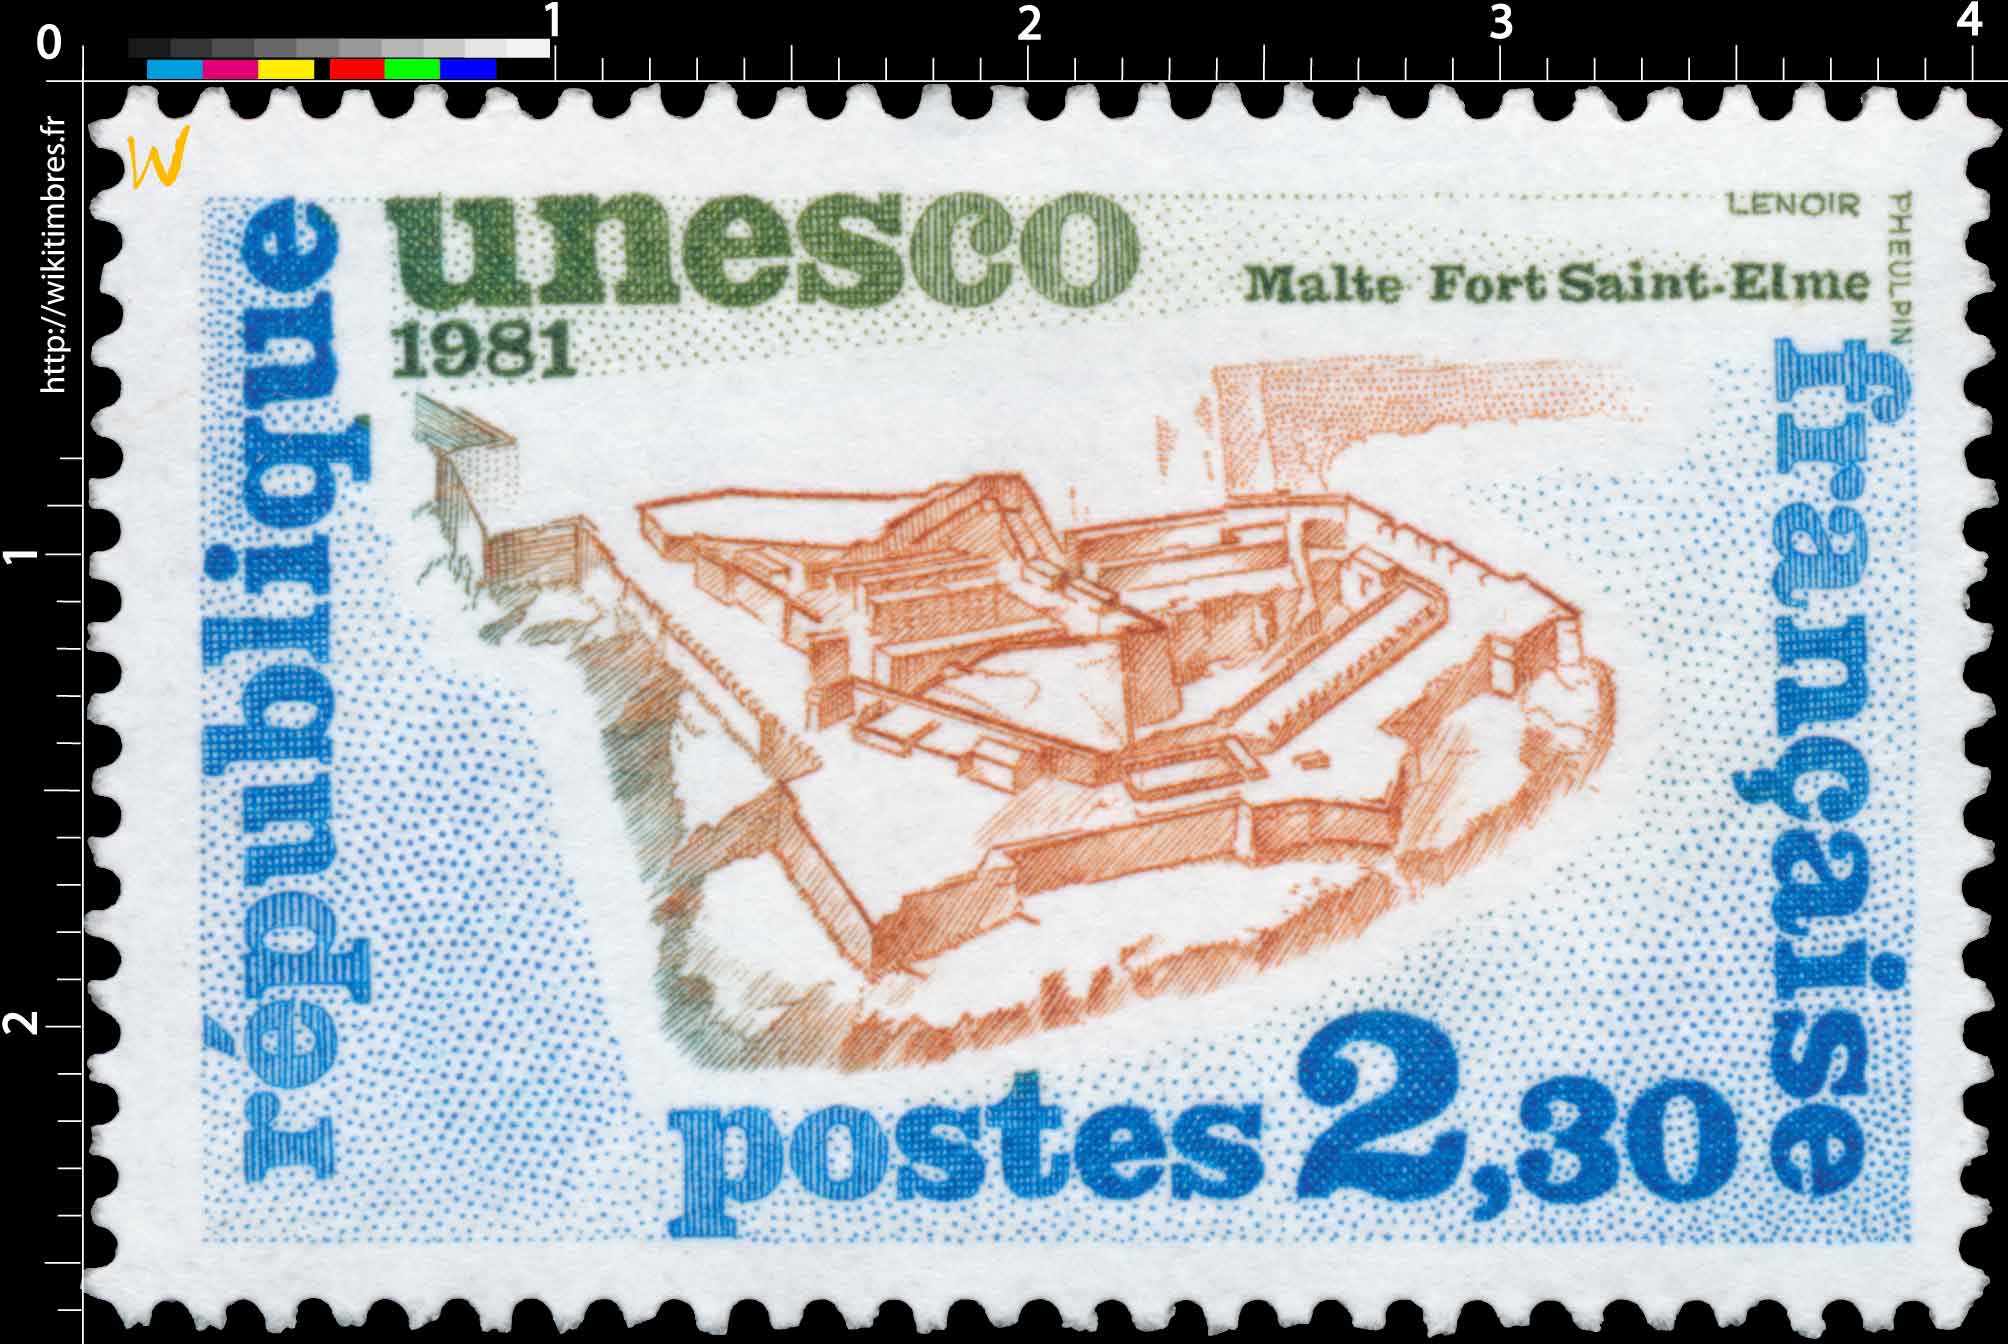 1981 Unesco Malte Fort Saint Elme